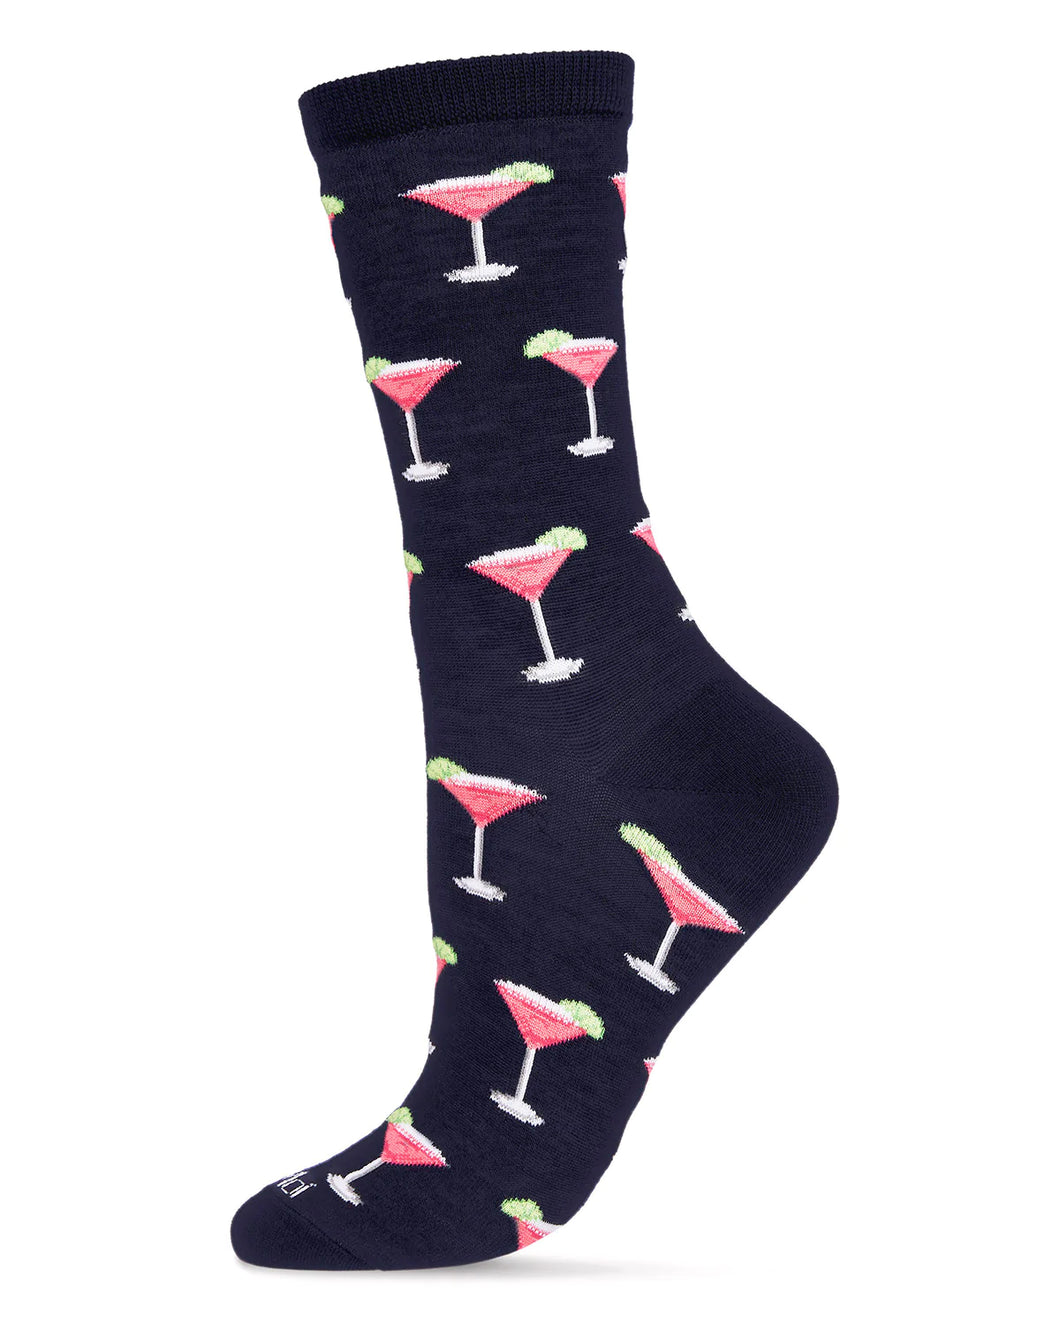 Cosmopolitan Ladies Socks